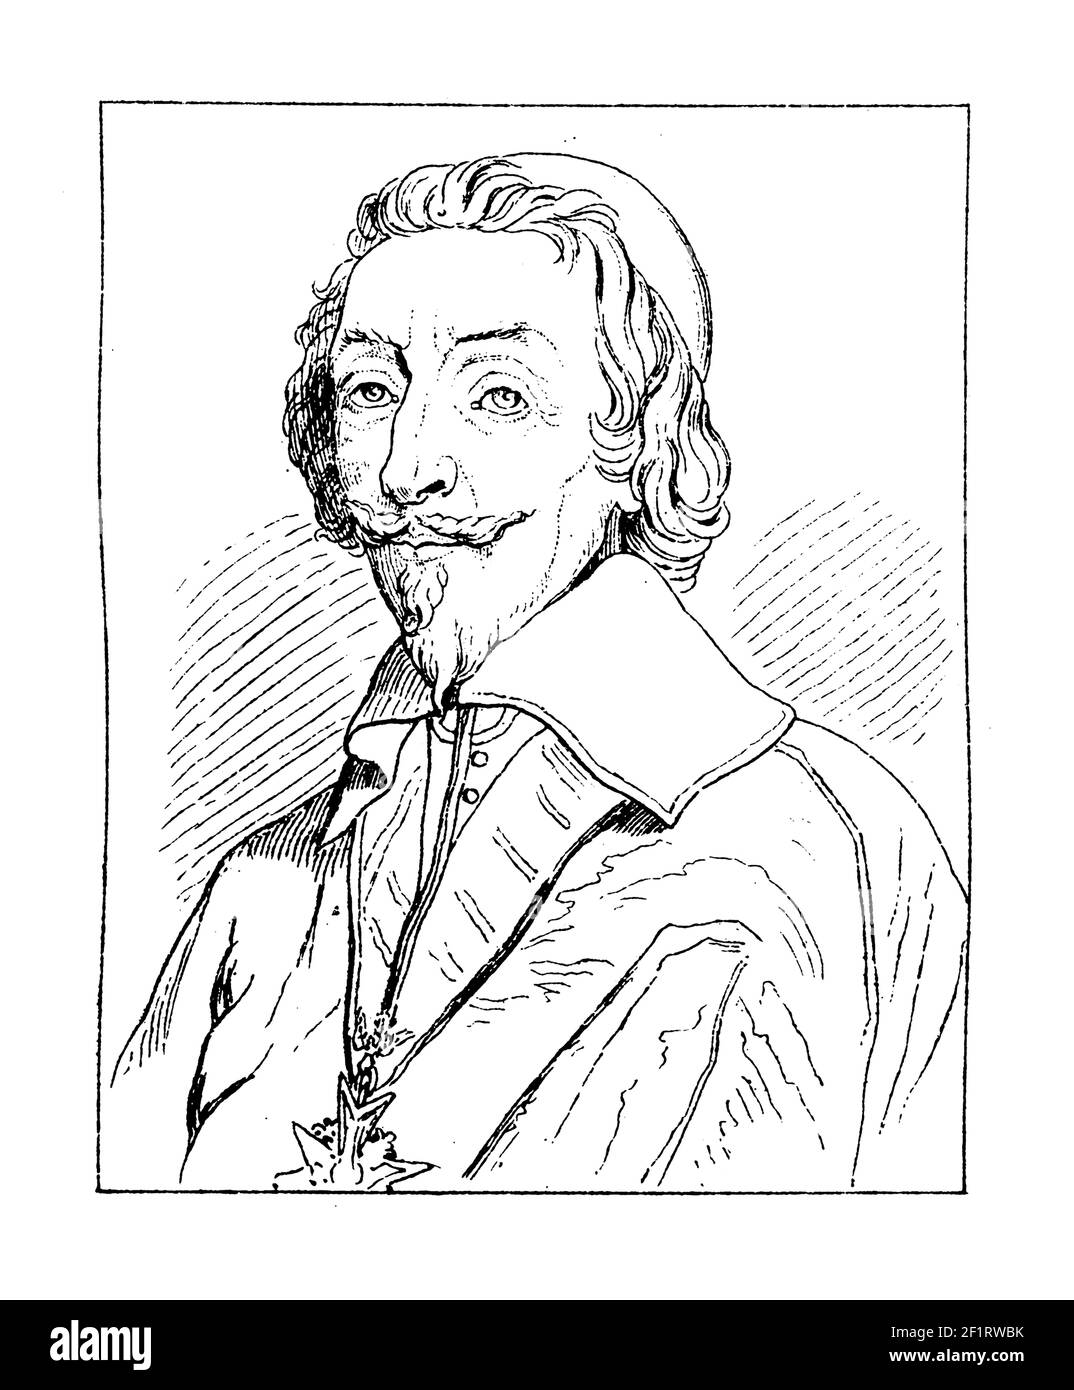 Incisione ottocentesca di un ritratto del cardinale Richelieu, chierico francese, nobile e statista. È nato il 9 settembre 1585 a Parigi, Francia Foto Stock